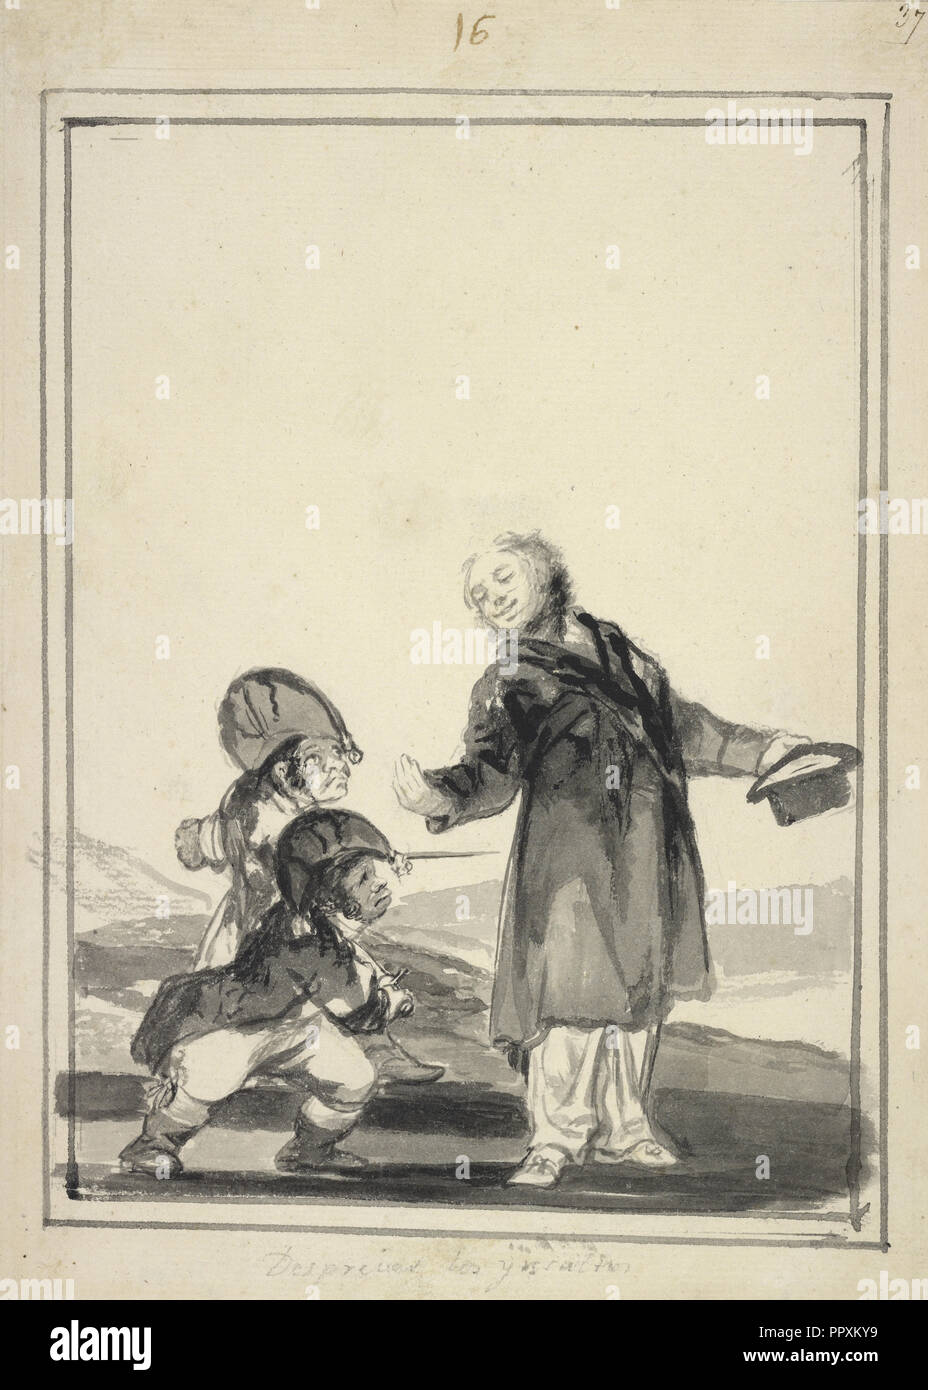 Sprezzante di insulti; Francisco José de Goya y Lucientes, Francisco de Goya, Spagnolo, 1746 - 1828, circa 1816 - 1820 Foto Stock